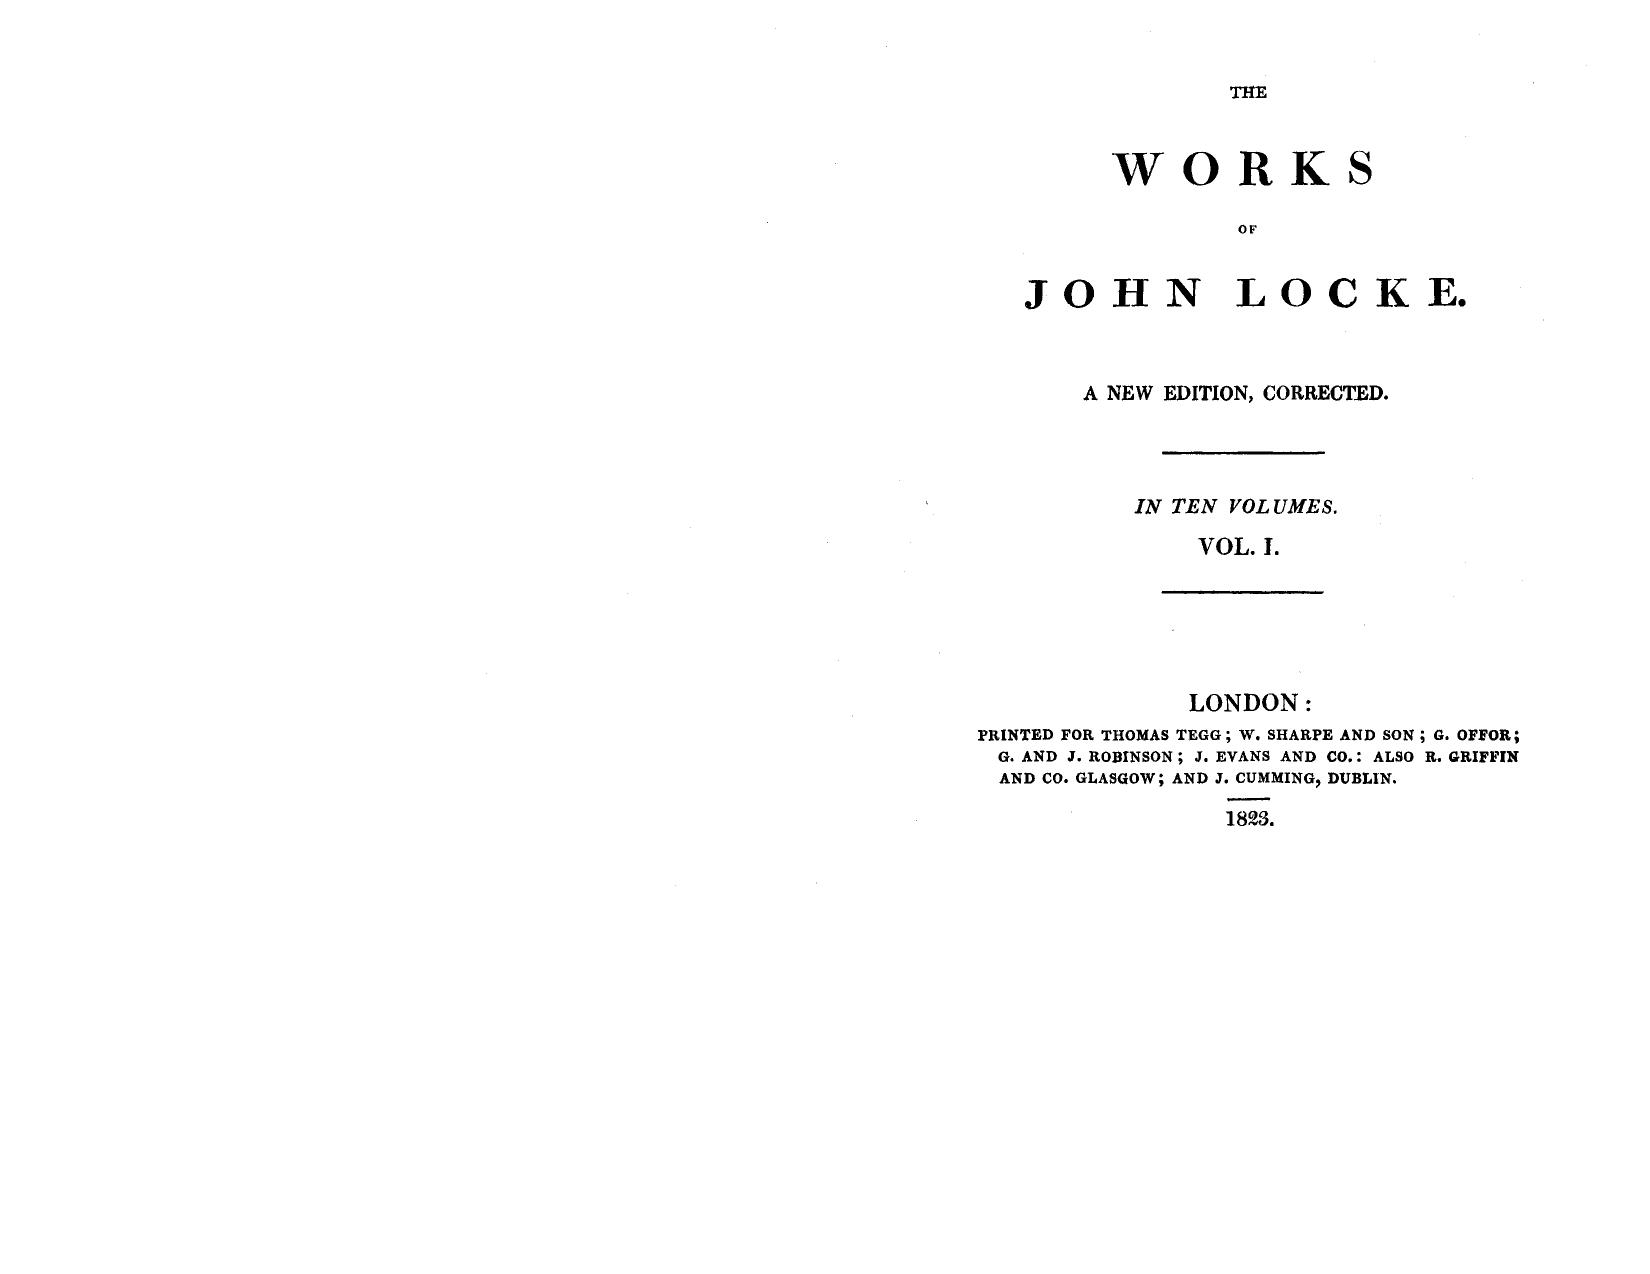 The works of John Locke 01 by John Locke